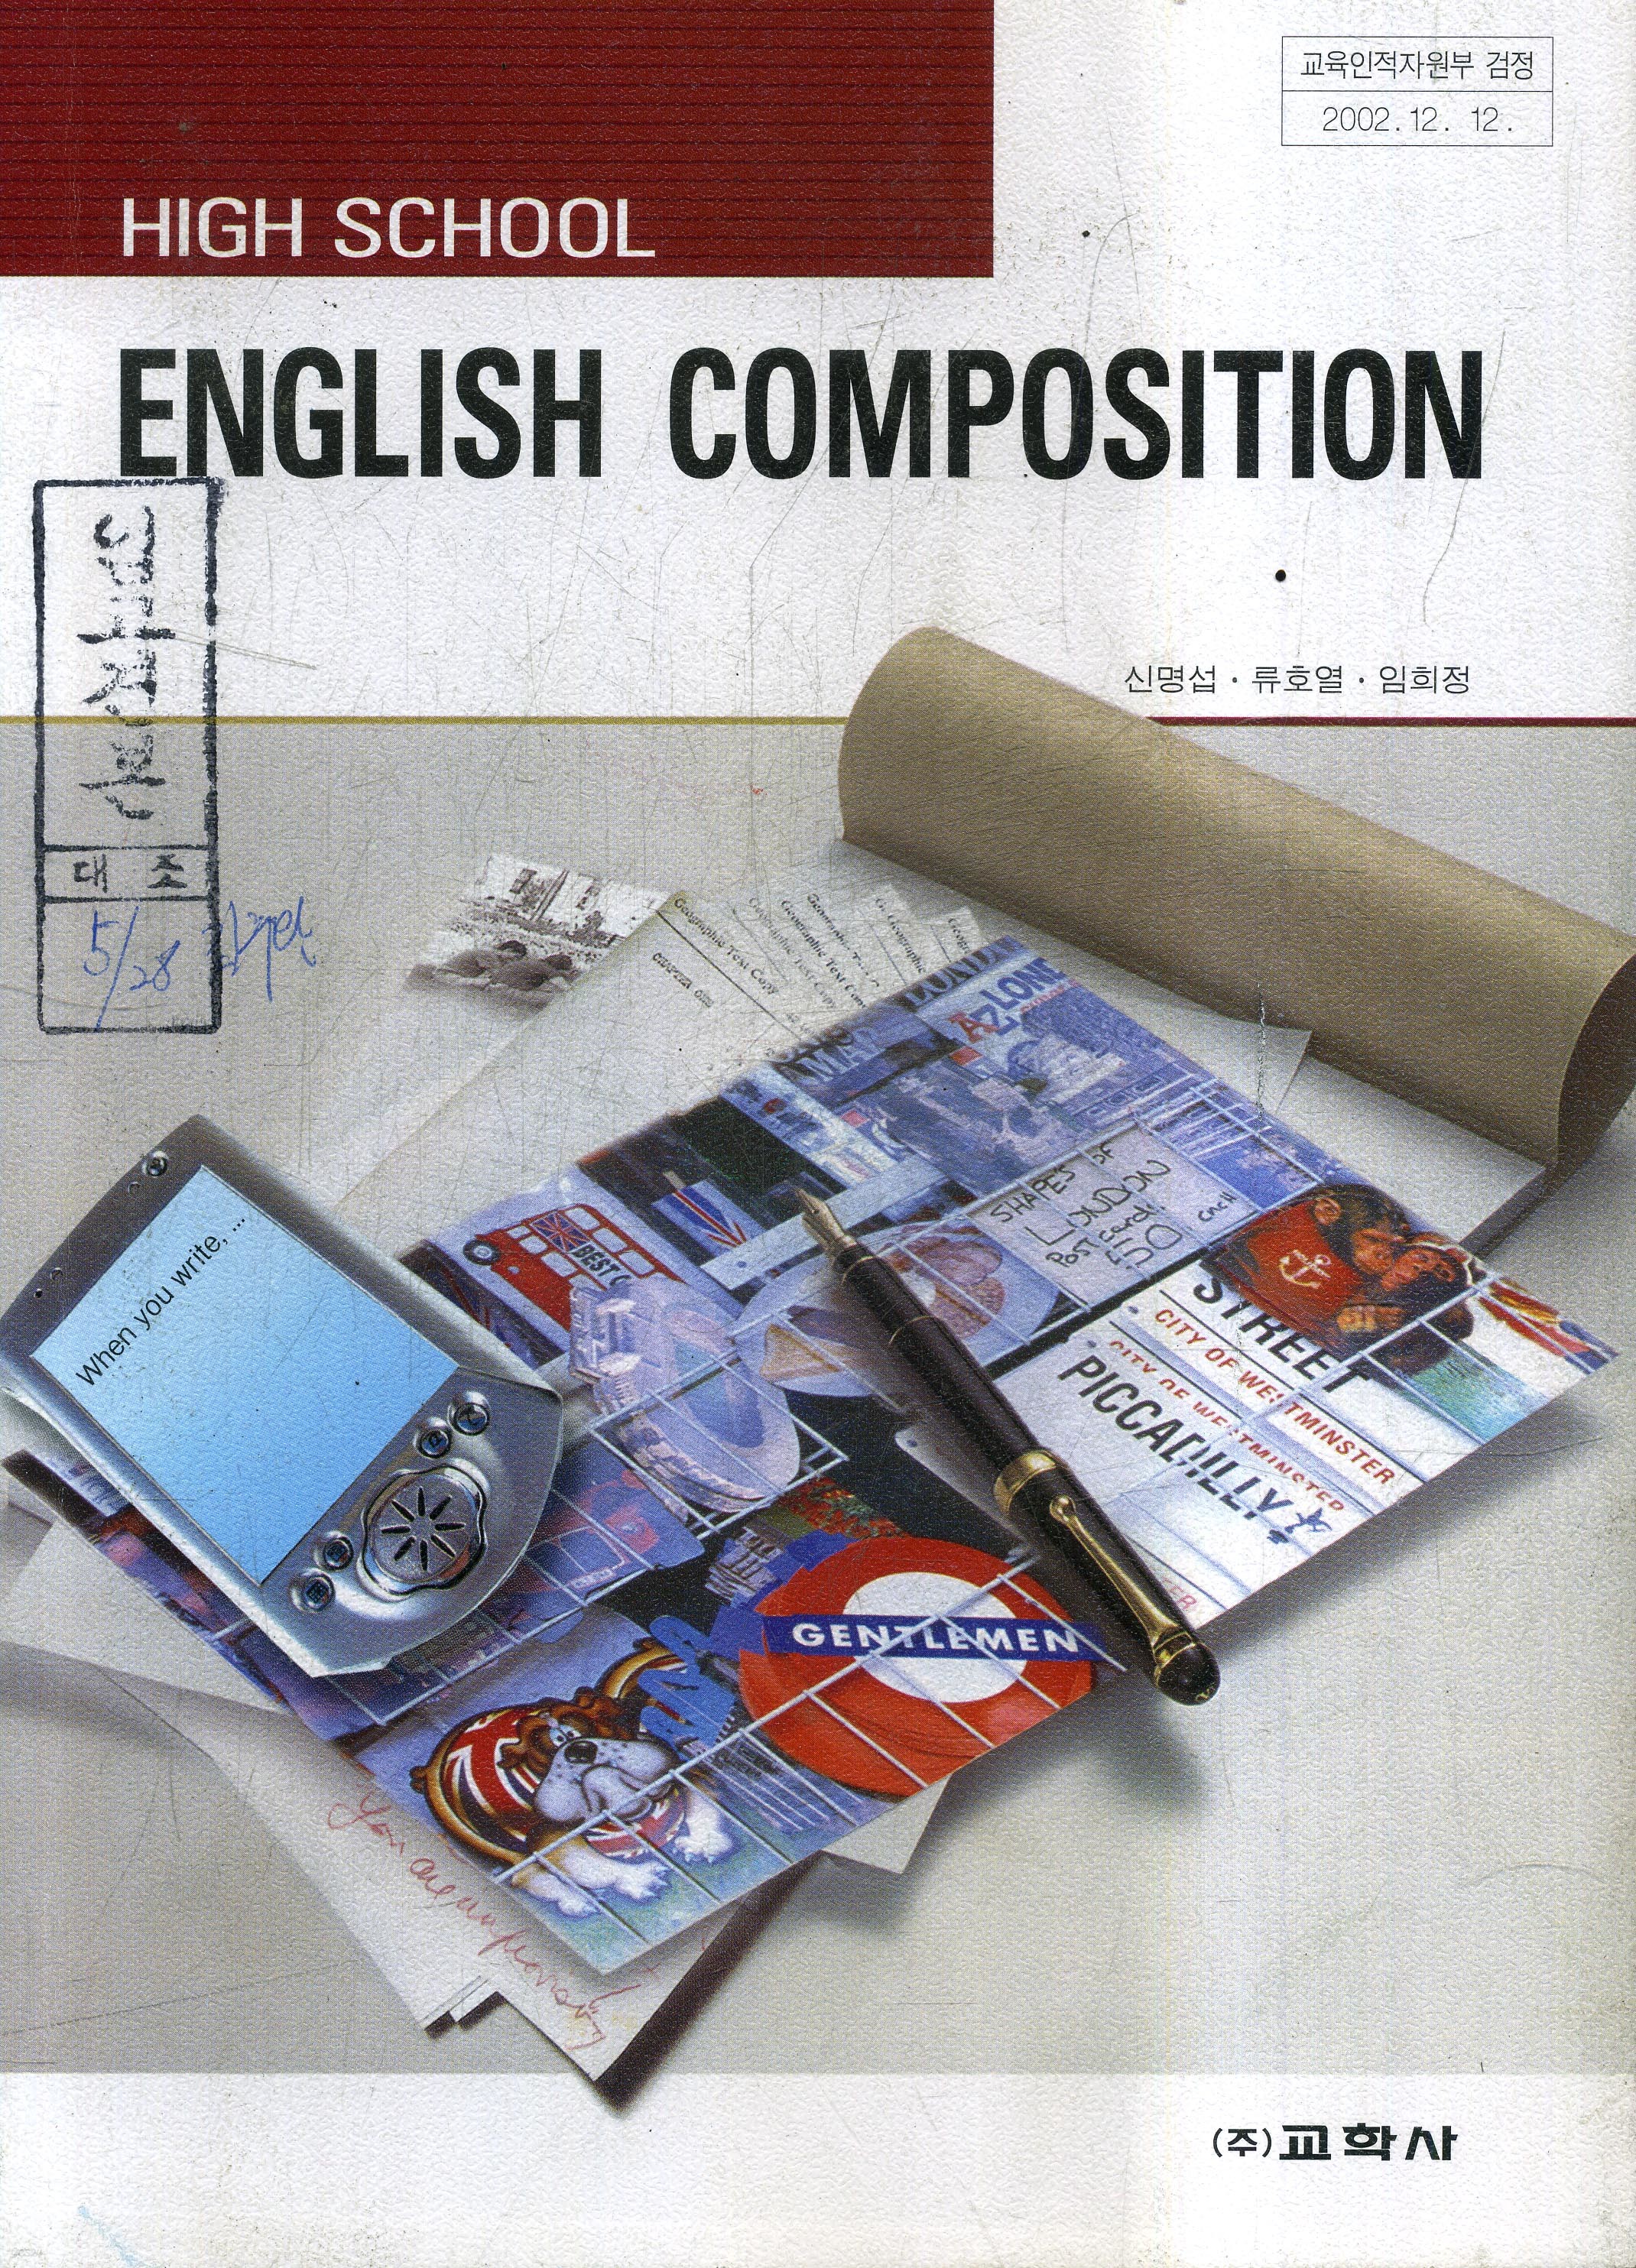 7차 고등 ENGLISH COMPOSITION 교과서 (이기동 외)